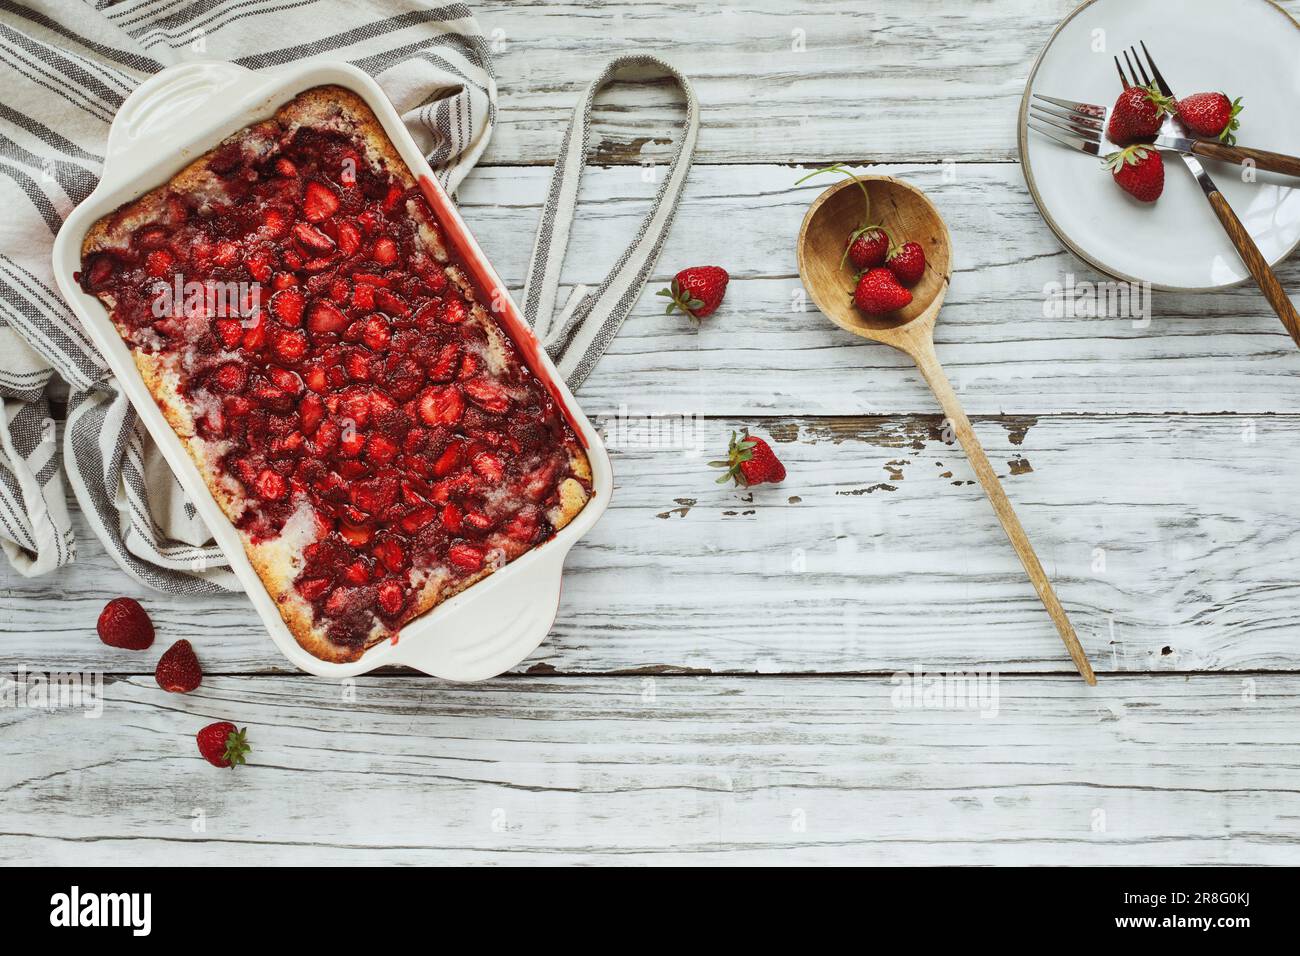 Vue de dessus à angle élevé de cordonnier de fraise maison sucrée ou Sonker cuit dans une poêle en céramique rouge avec tablier et cuillère en bois sur une table rustique. Banque D'Images